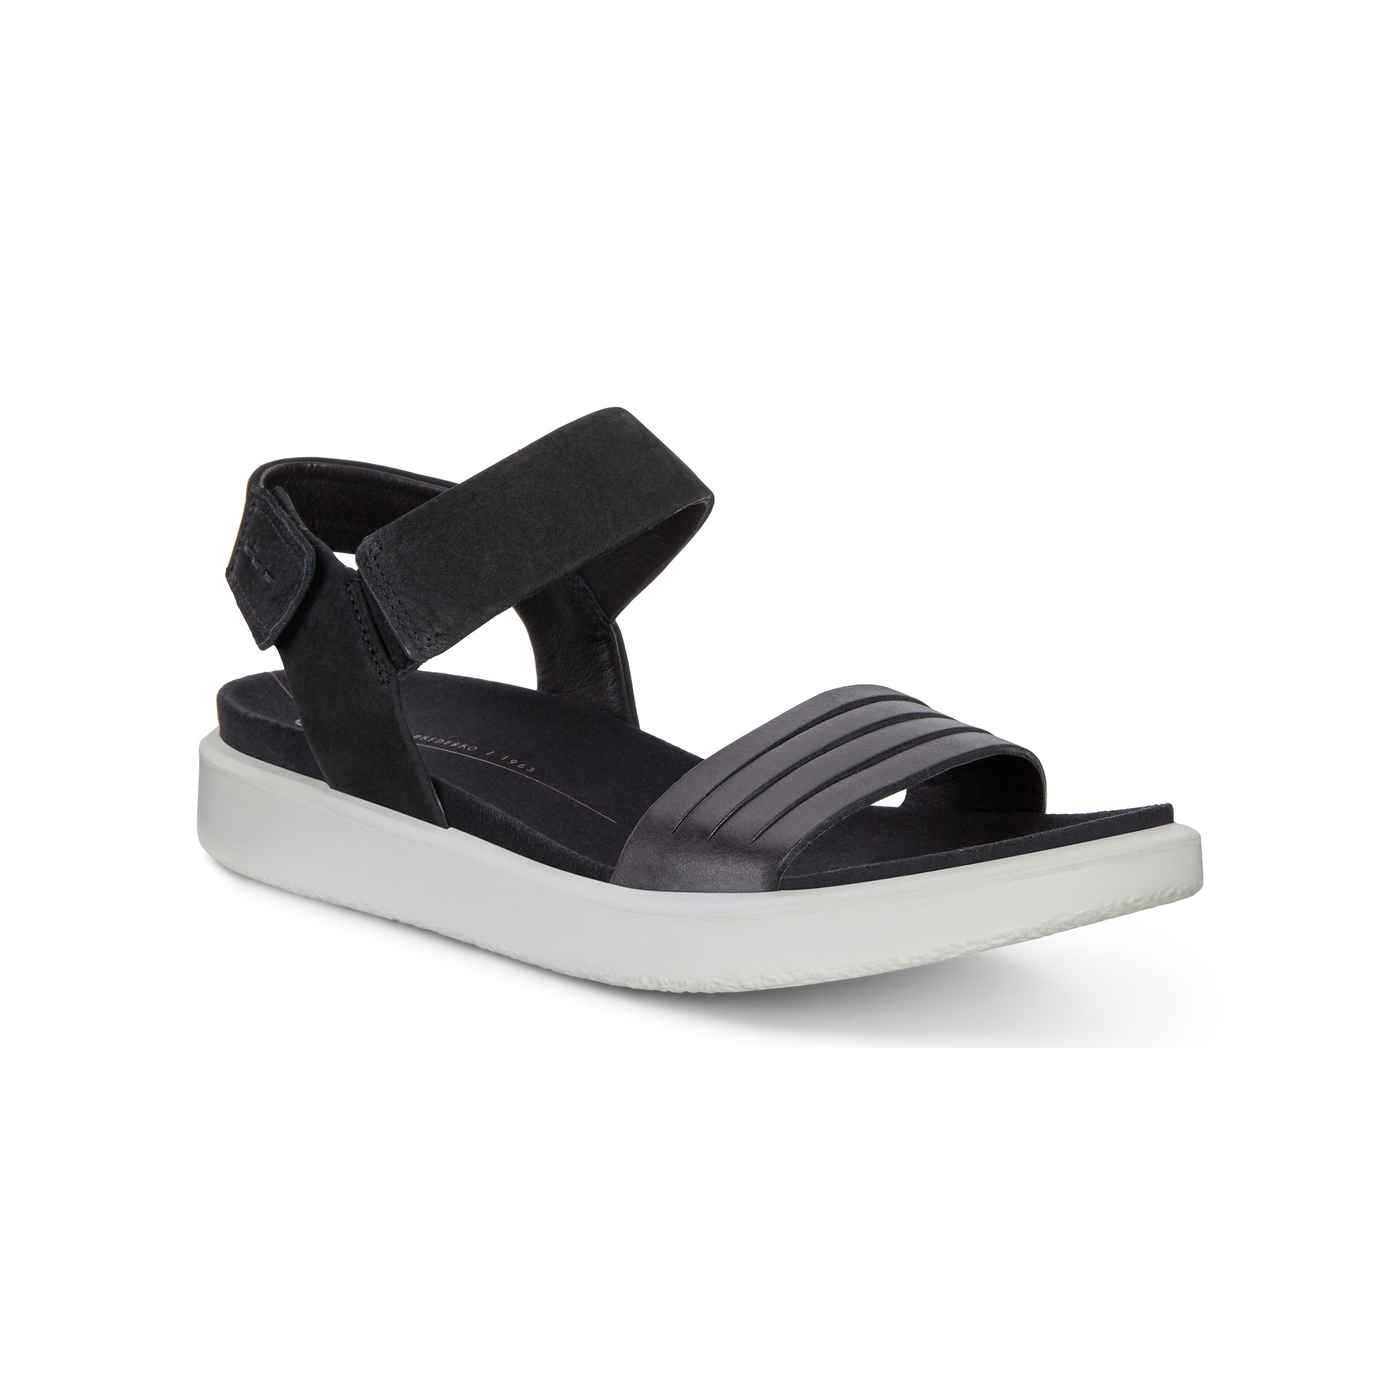 ECCO Flowt Flat Ankle Strap Sandal | Women's Sandals | ECCO® Shoes